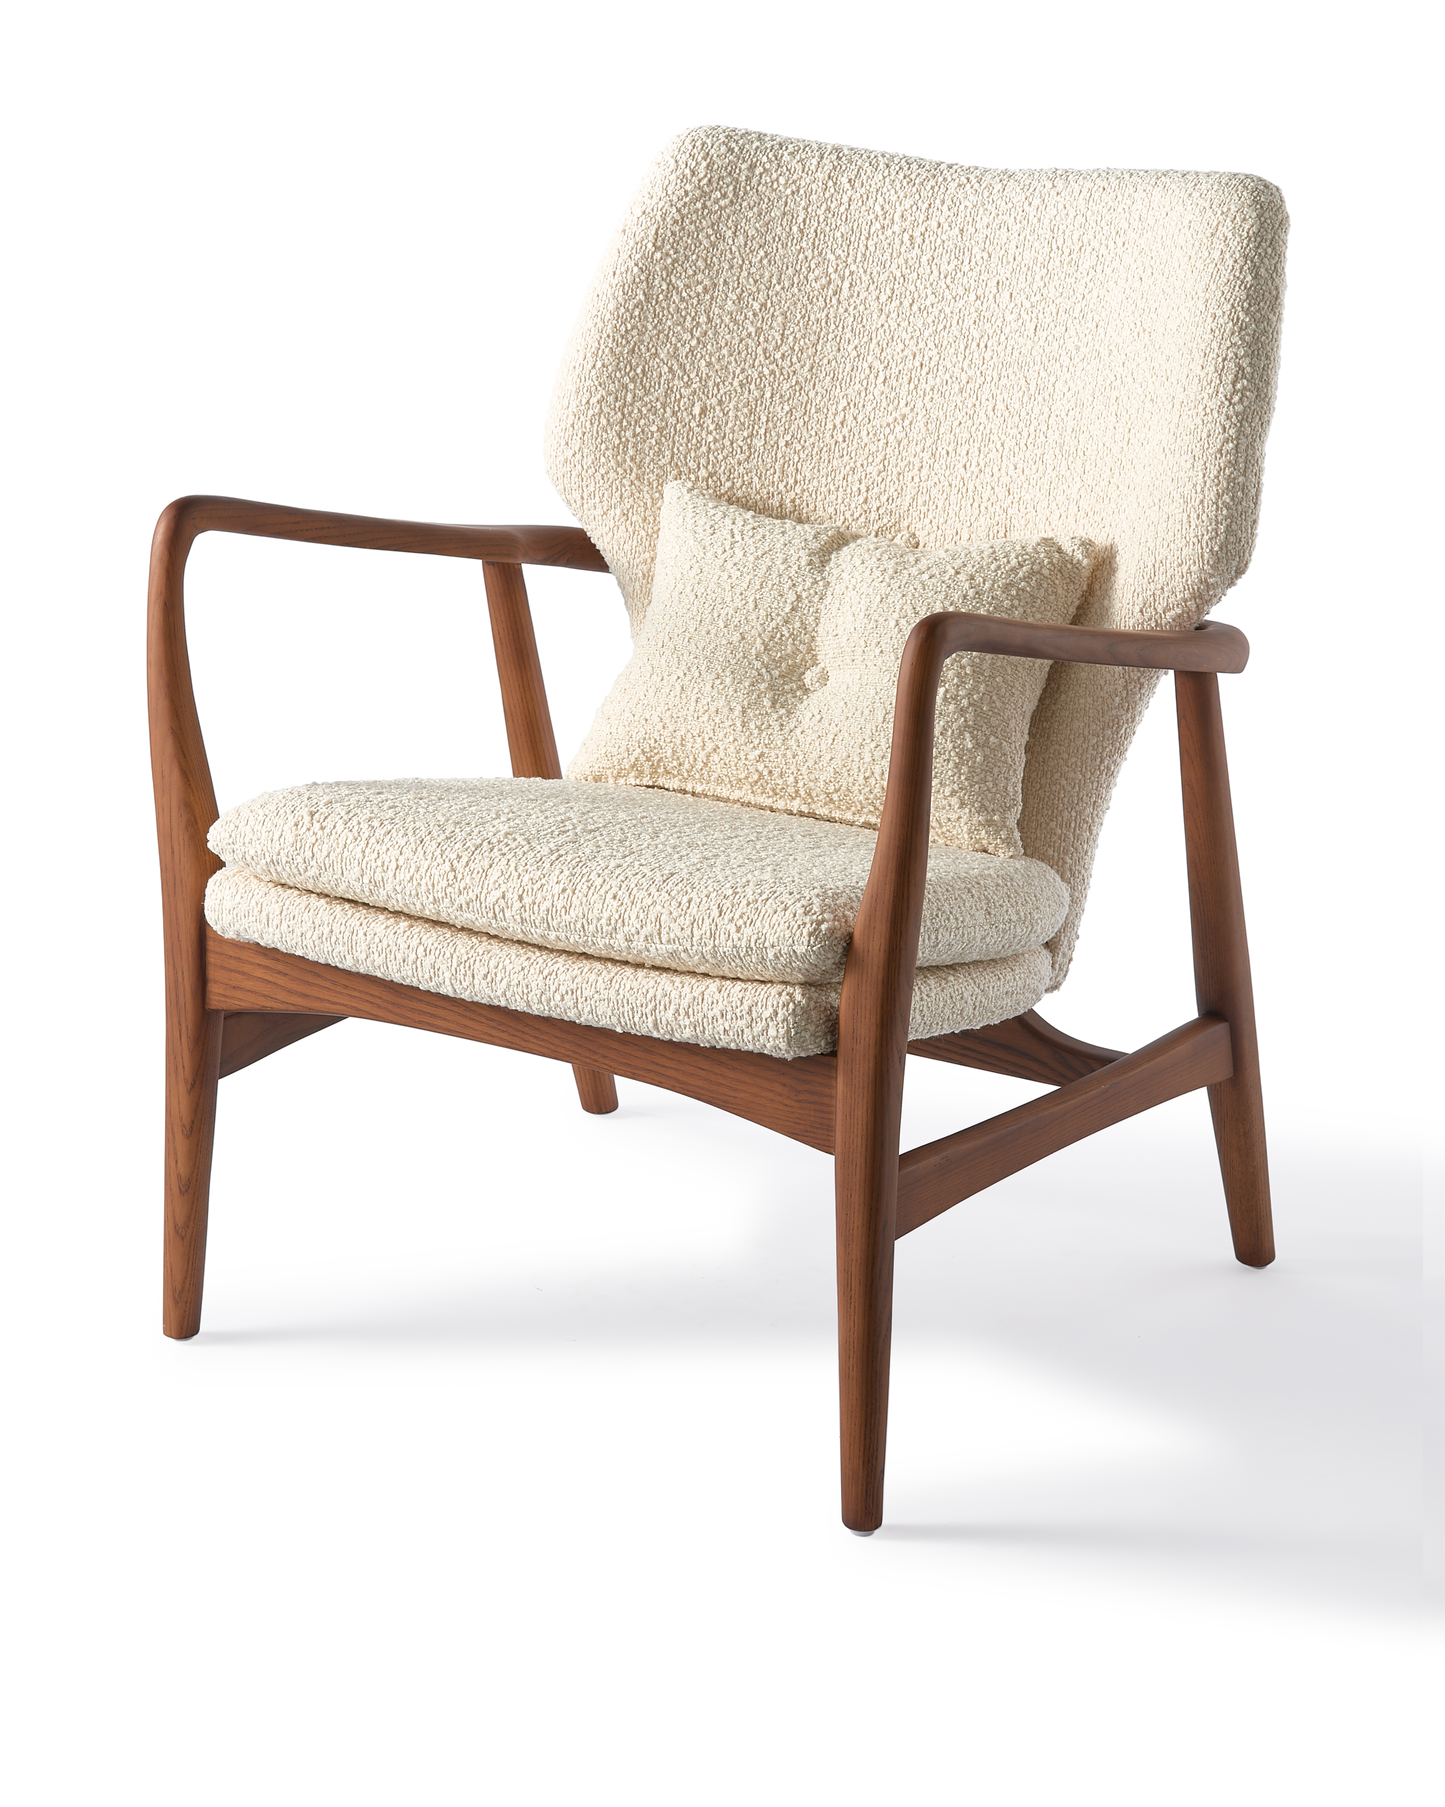 Le magnifique fauteuil Peggy écru de chez Pols Potten 🙊